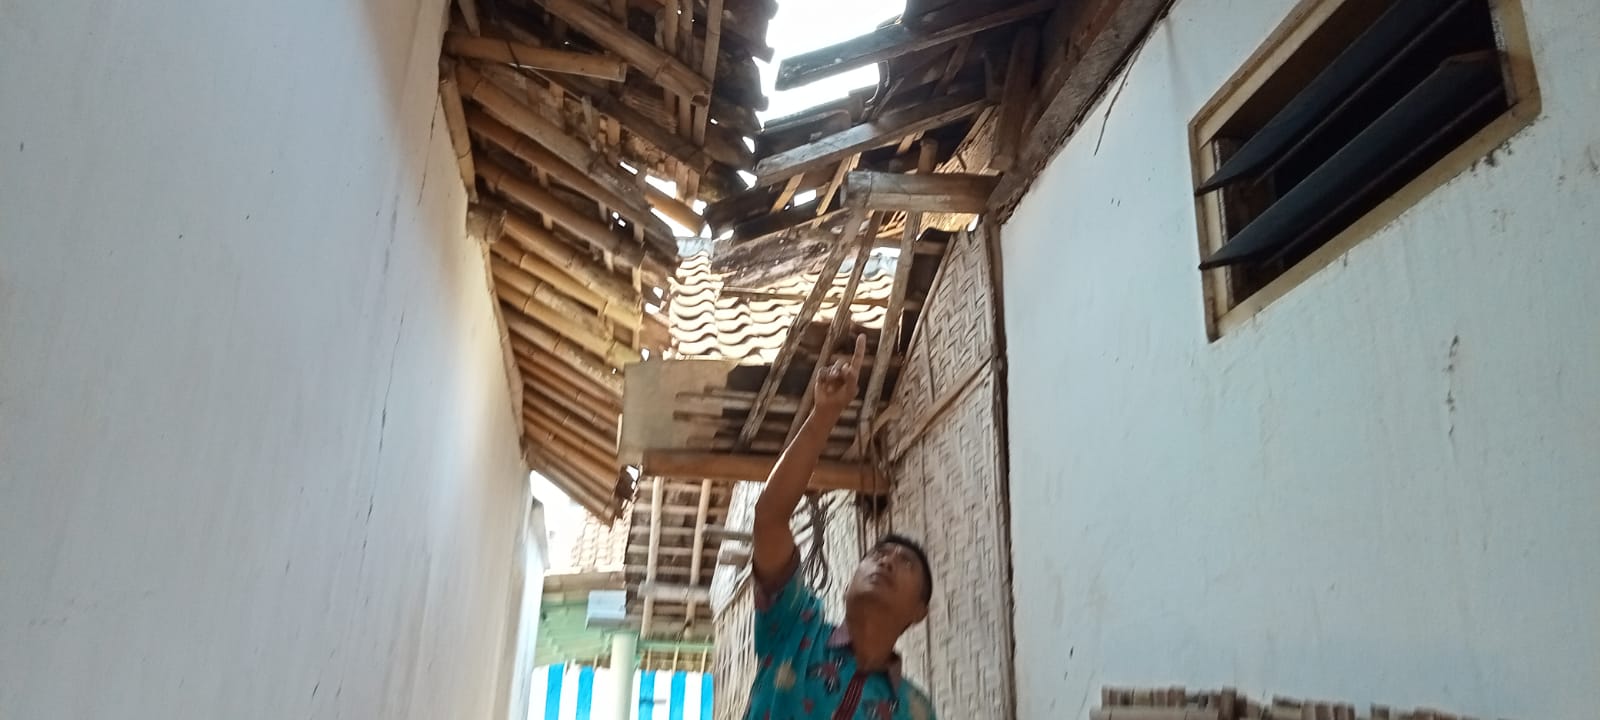 Atap Rumah Warga Jember Berjatuhan Diguncang Gempa